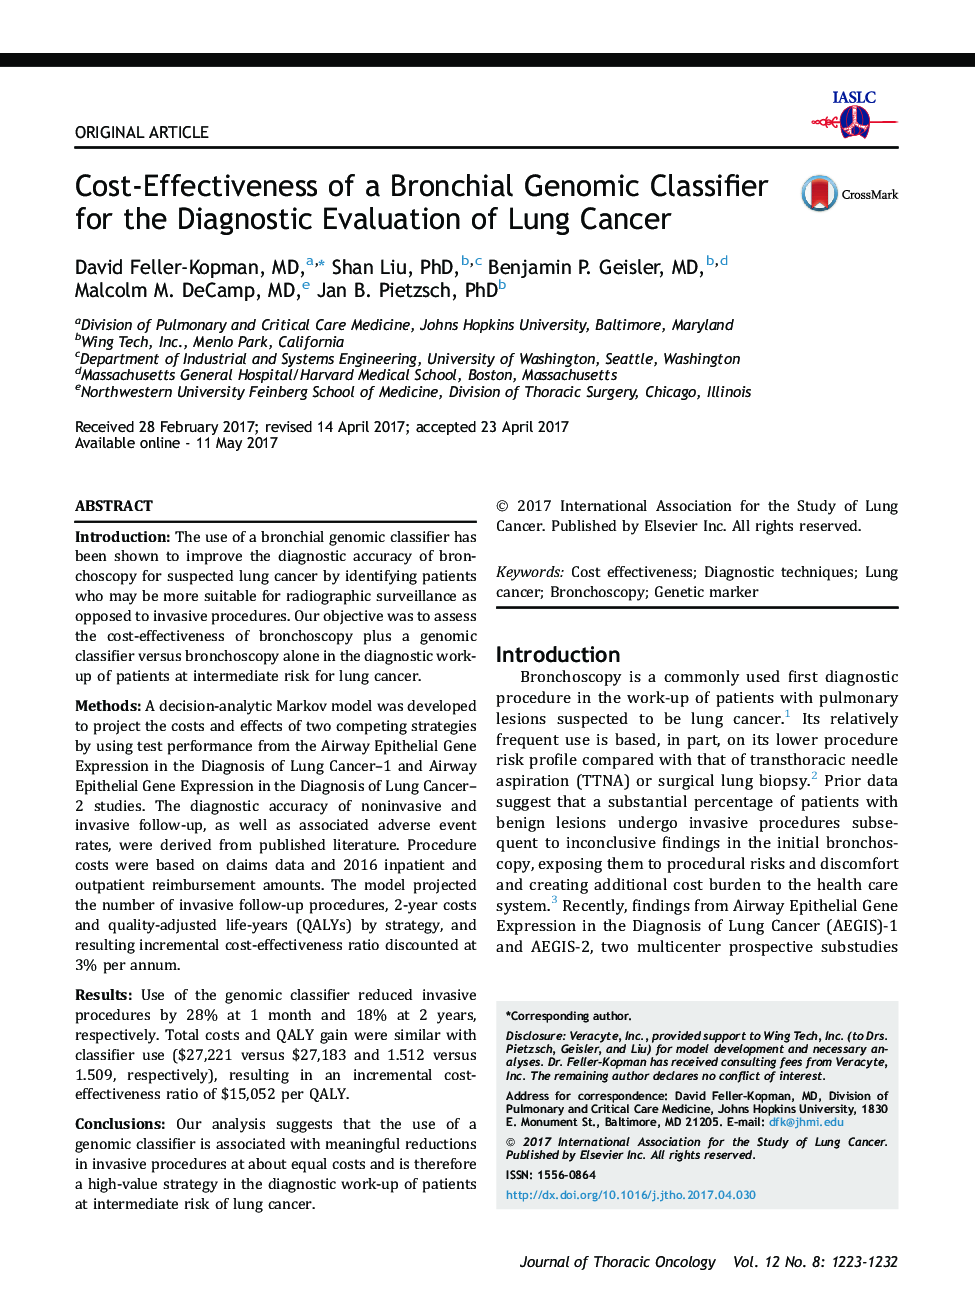 هزینه-اثربخشی طبقه بندی ژنوم برونشی برای ارزیابی تشخیصی سرطان ریه 